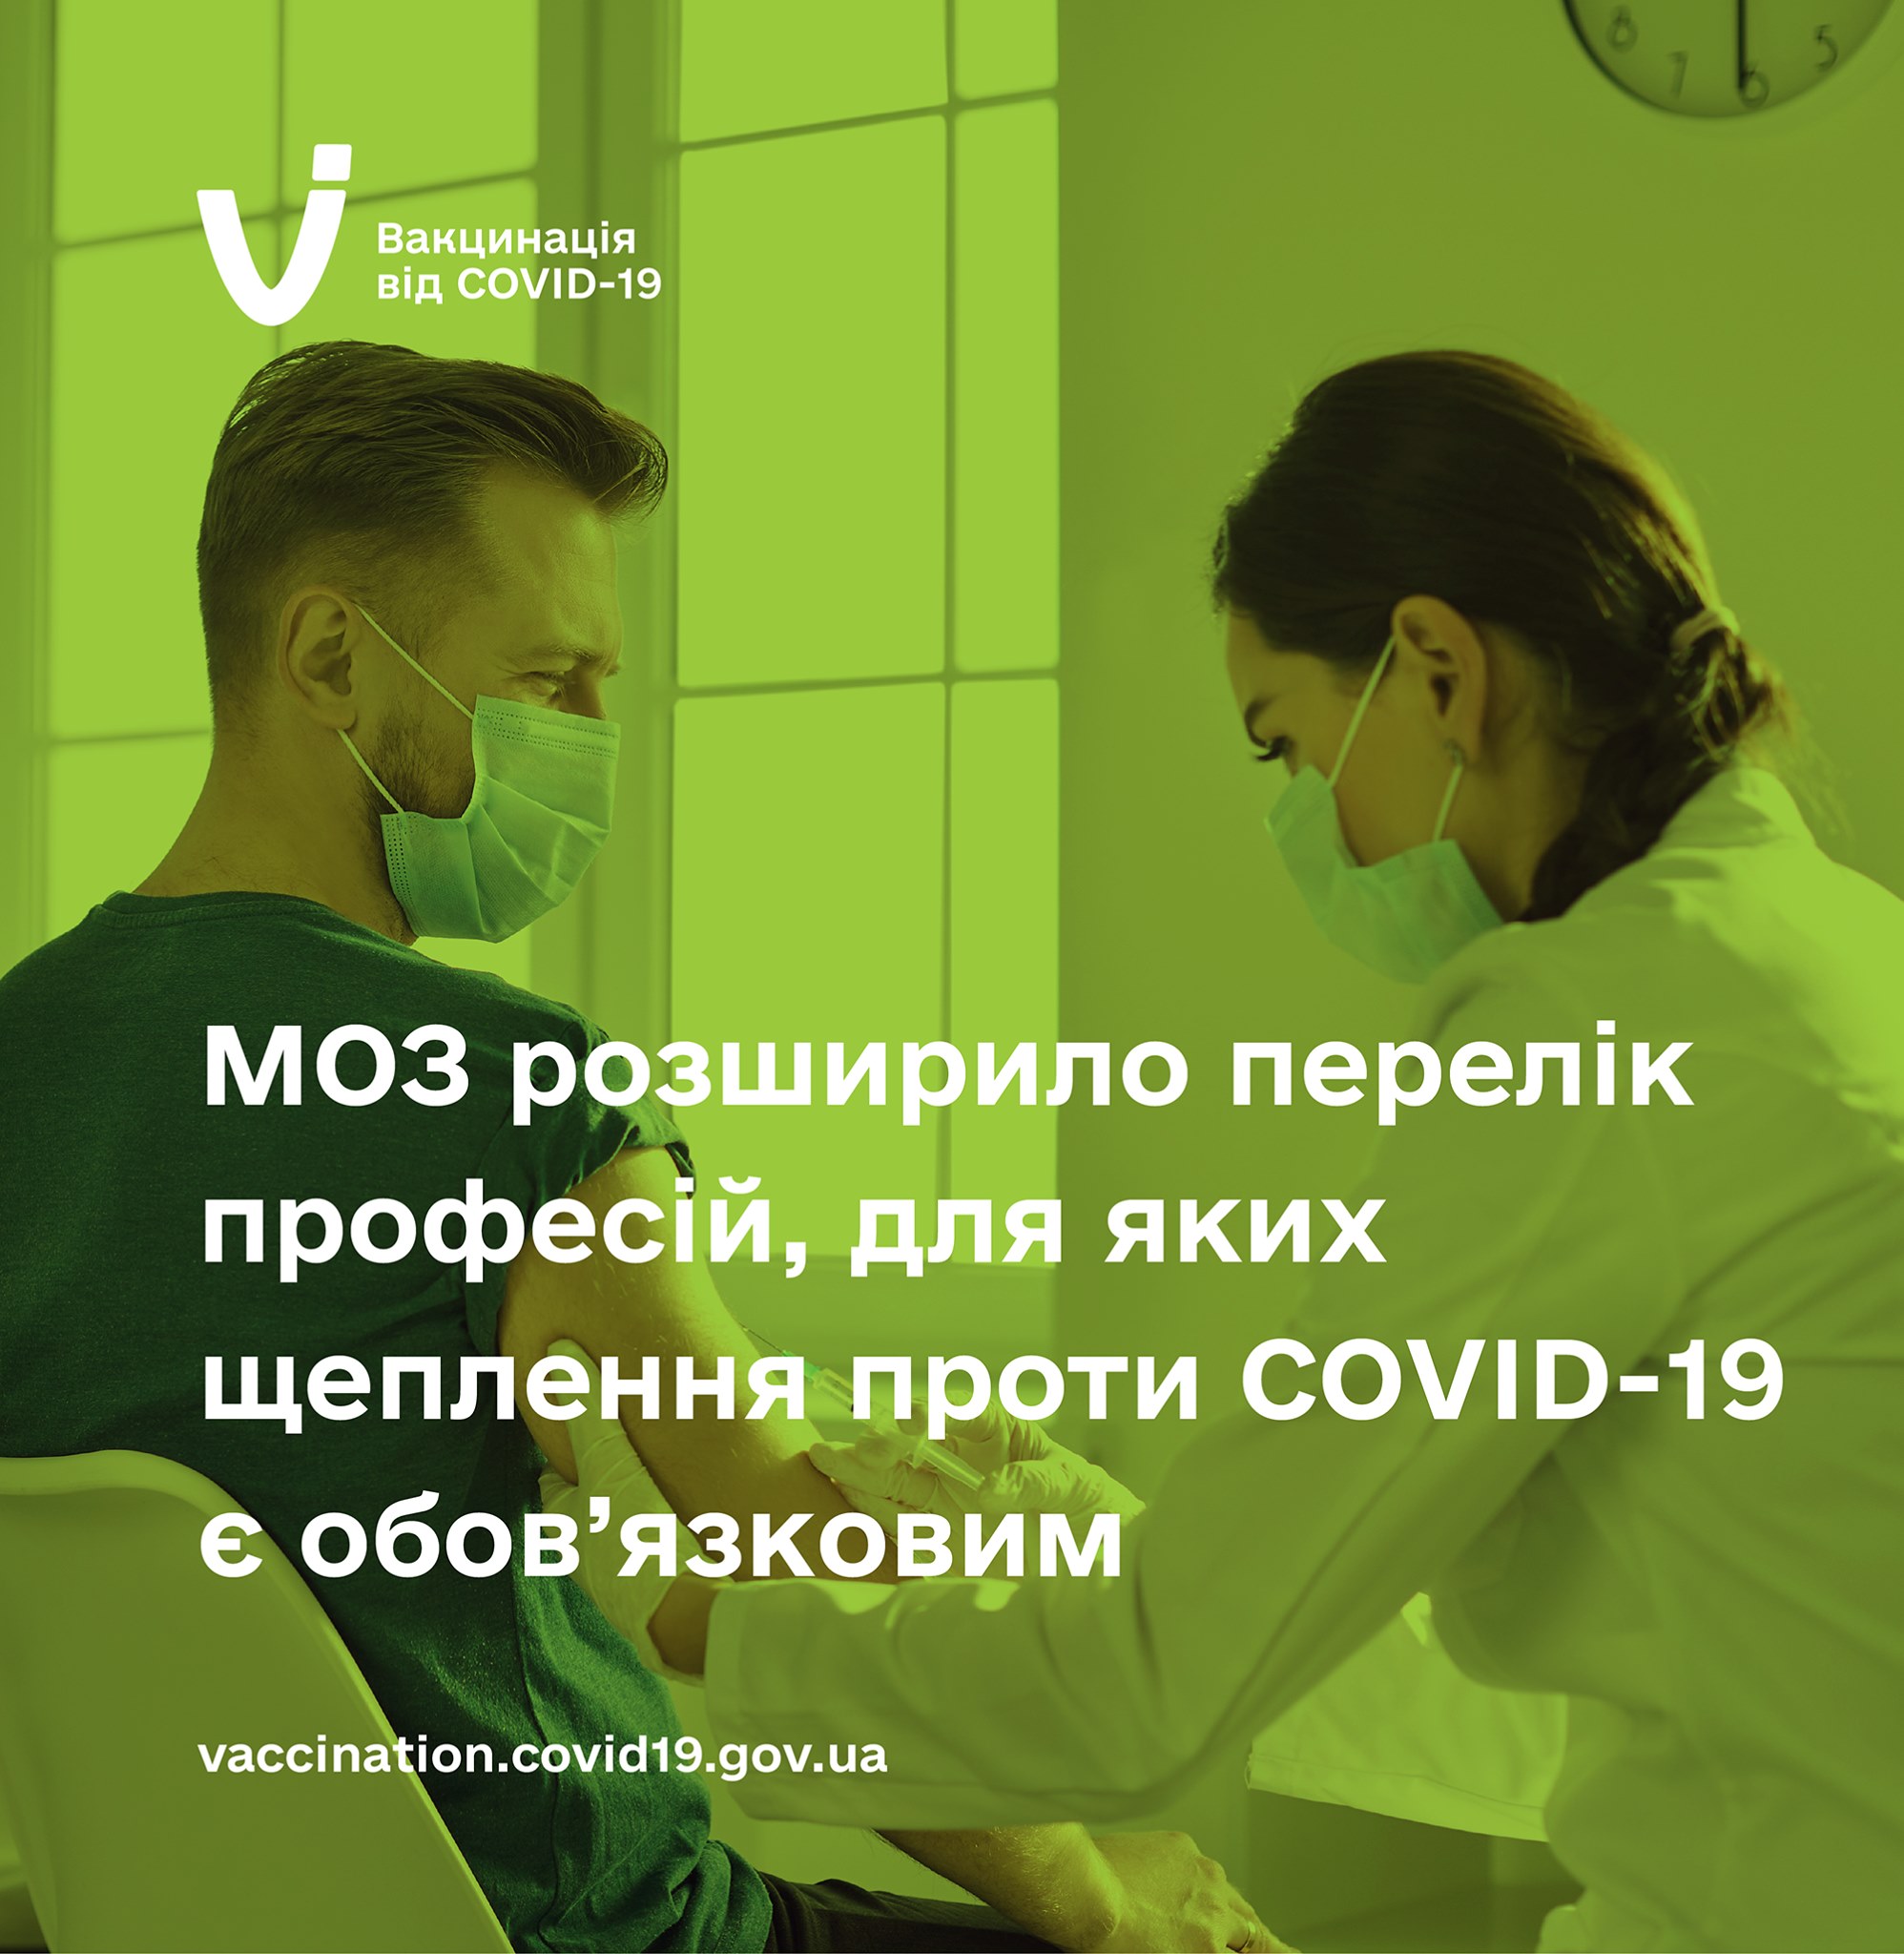 МОЗ розширило перелік організацій, співробітники яких мають обов’язково вакцинуватись проти COVID-19